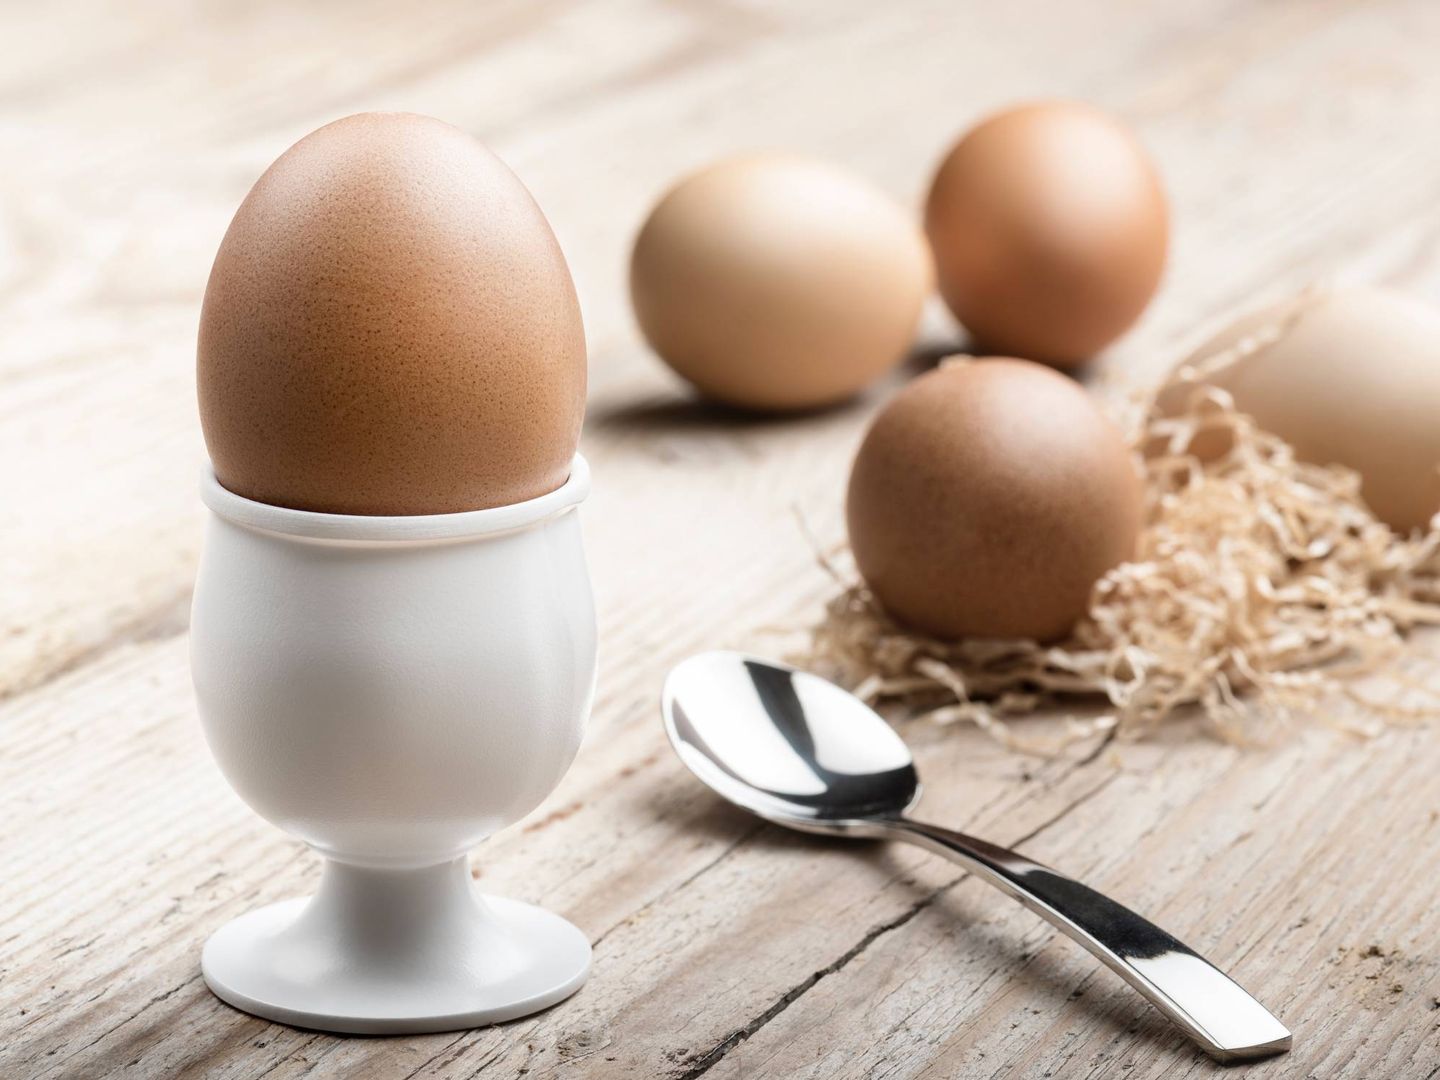 La dieta proteica aumenta el consumo de huevos, carnes y pescados. (Enrico Mantegazza para Unsplash)